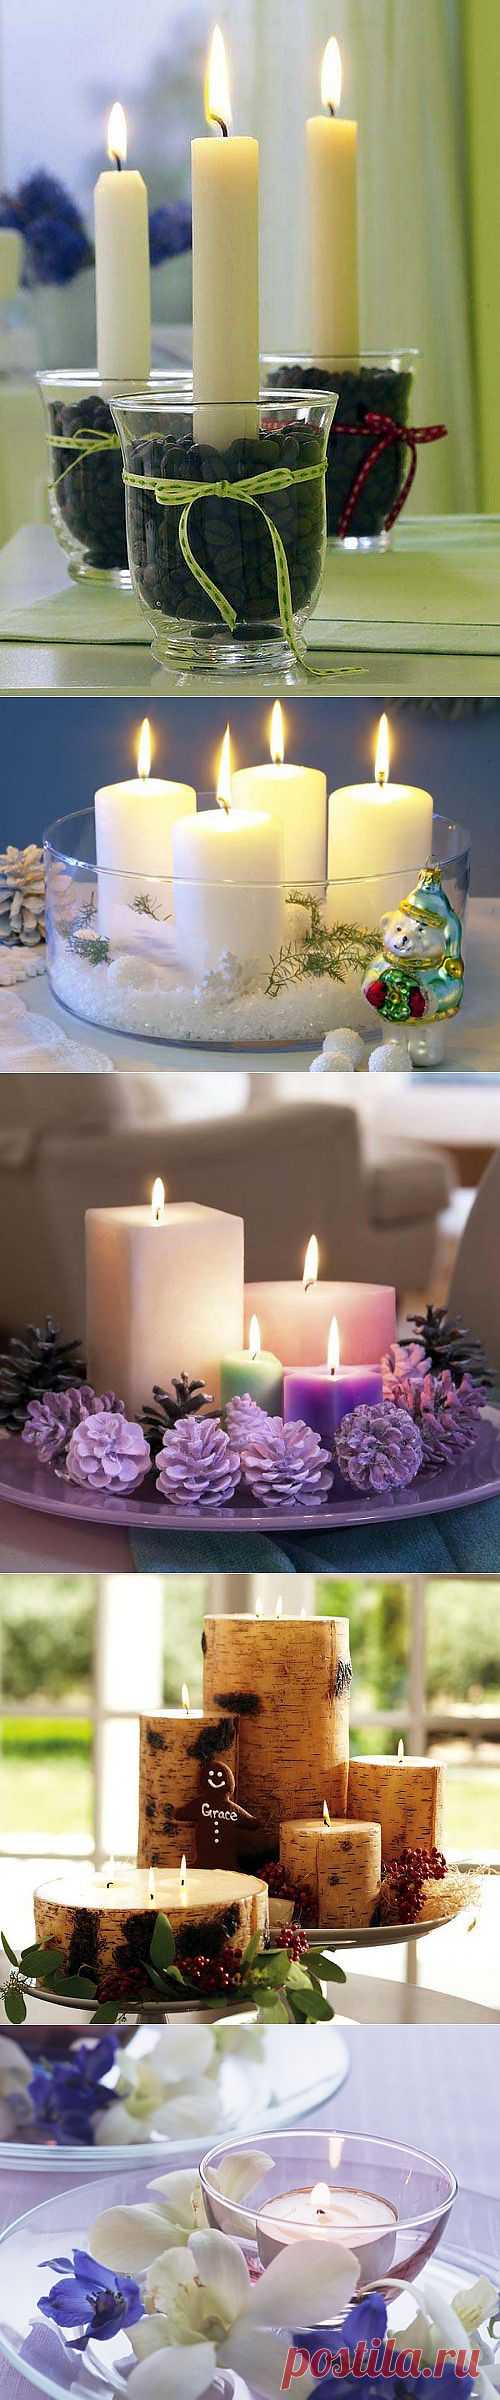 Тепло и уют: свечи в интерьере | Интерьер и Дизайн